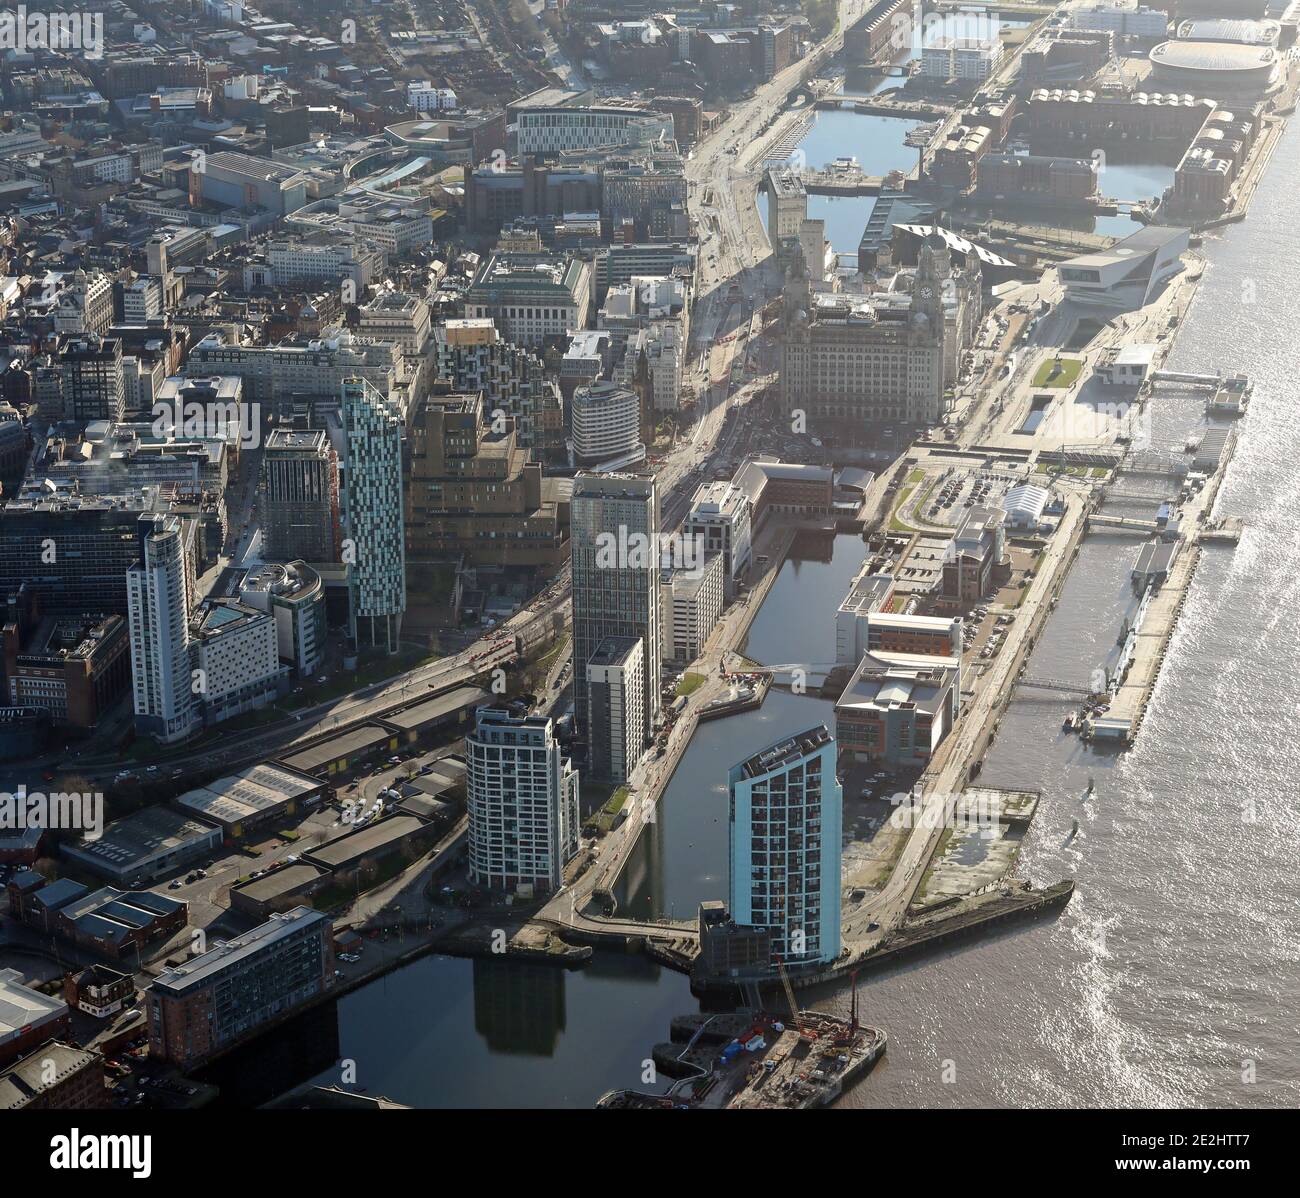 Vista aerea di Princes Dock, Liverpool guardando a sud verso il Royal Liver Building, il Cunard Building e il Port of Liverpool Building. Foto Stock